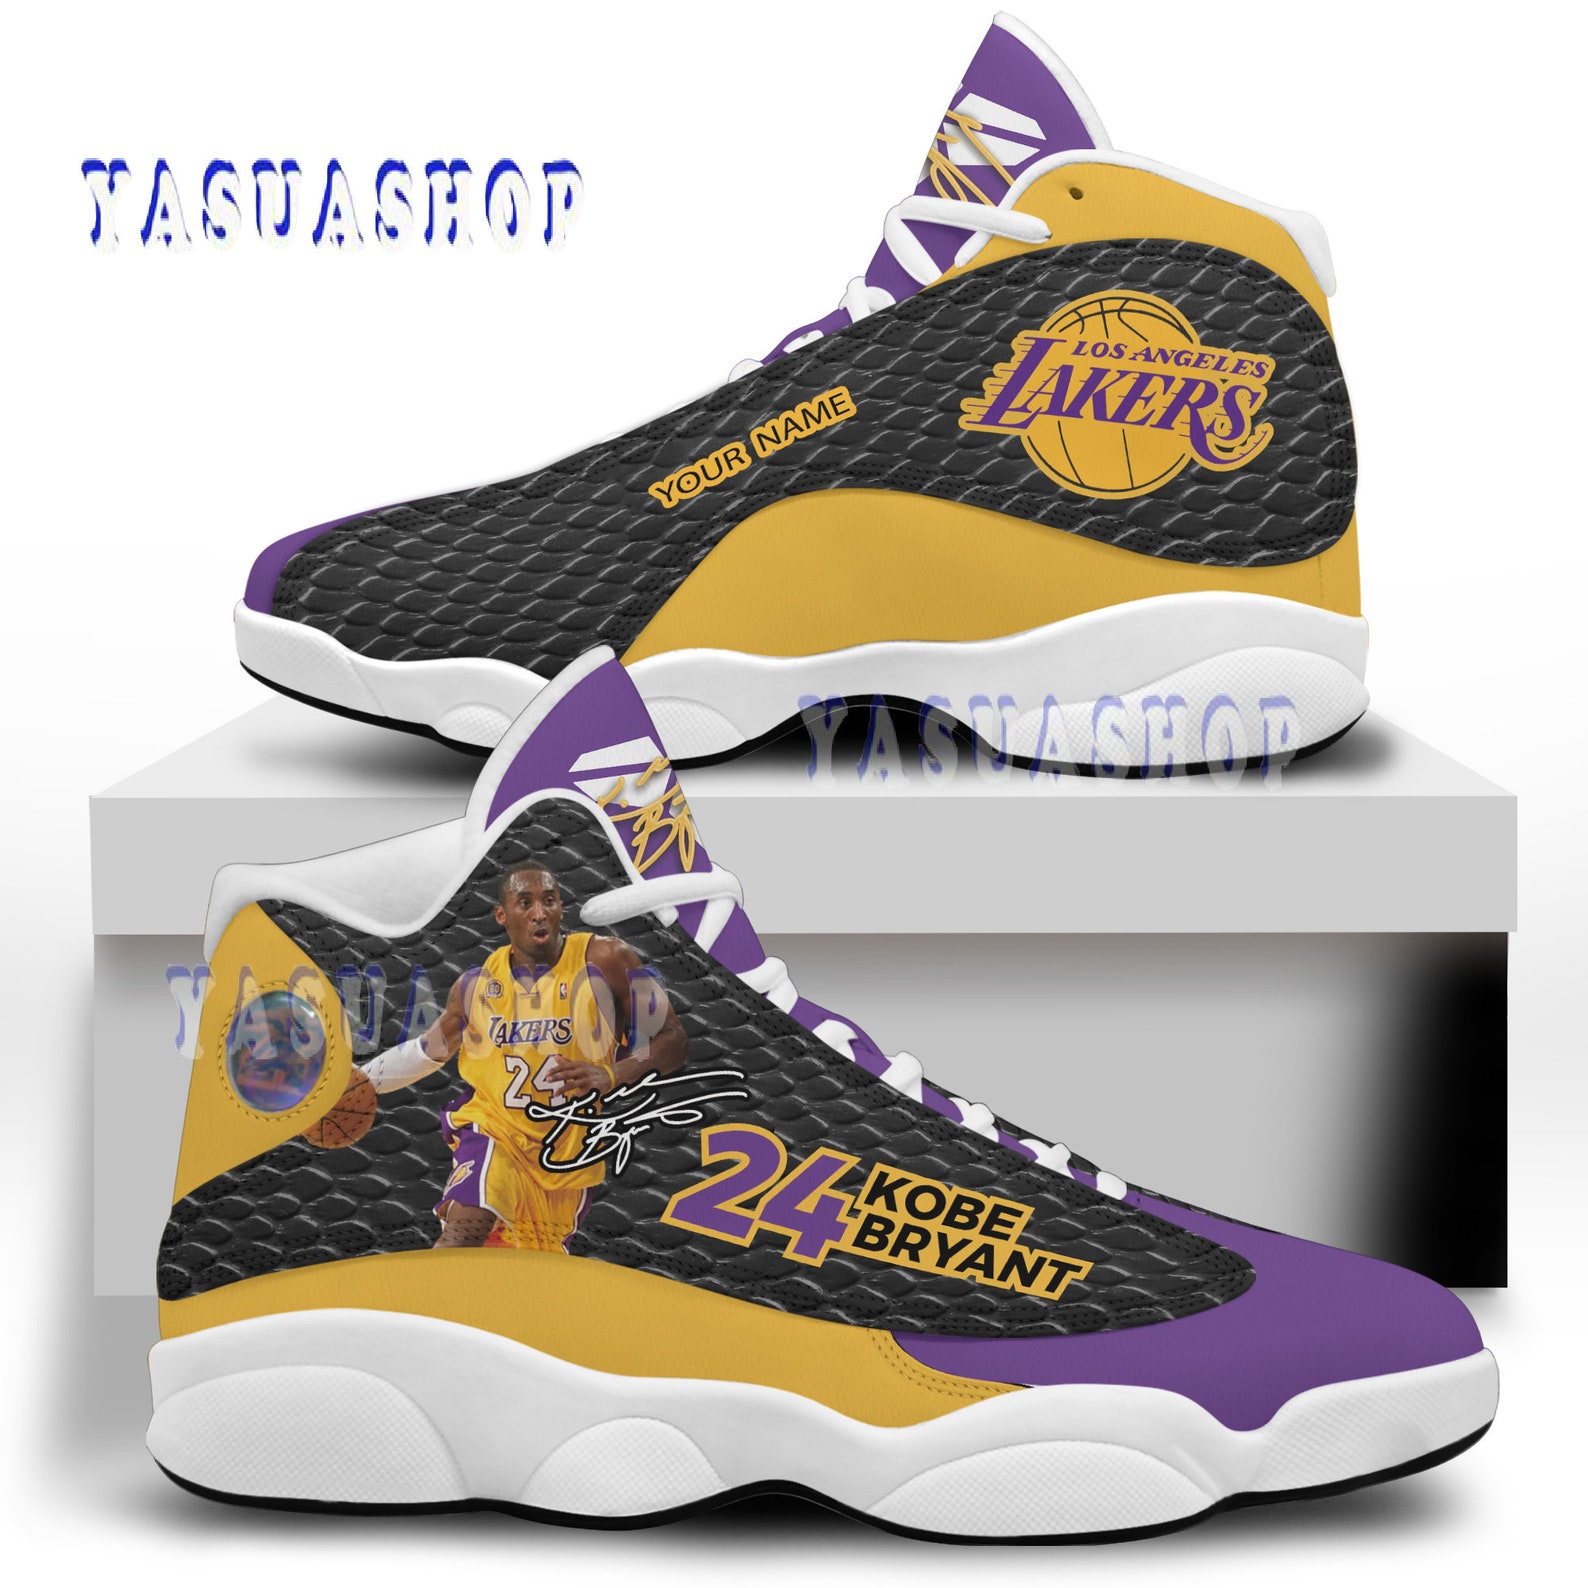 Lakers Kobe Bryant Air Jordan 13 Sneakers Kobe Bryant Shoes | Etsy